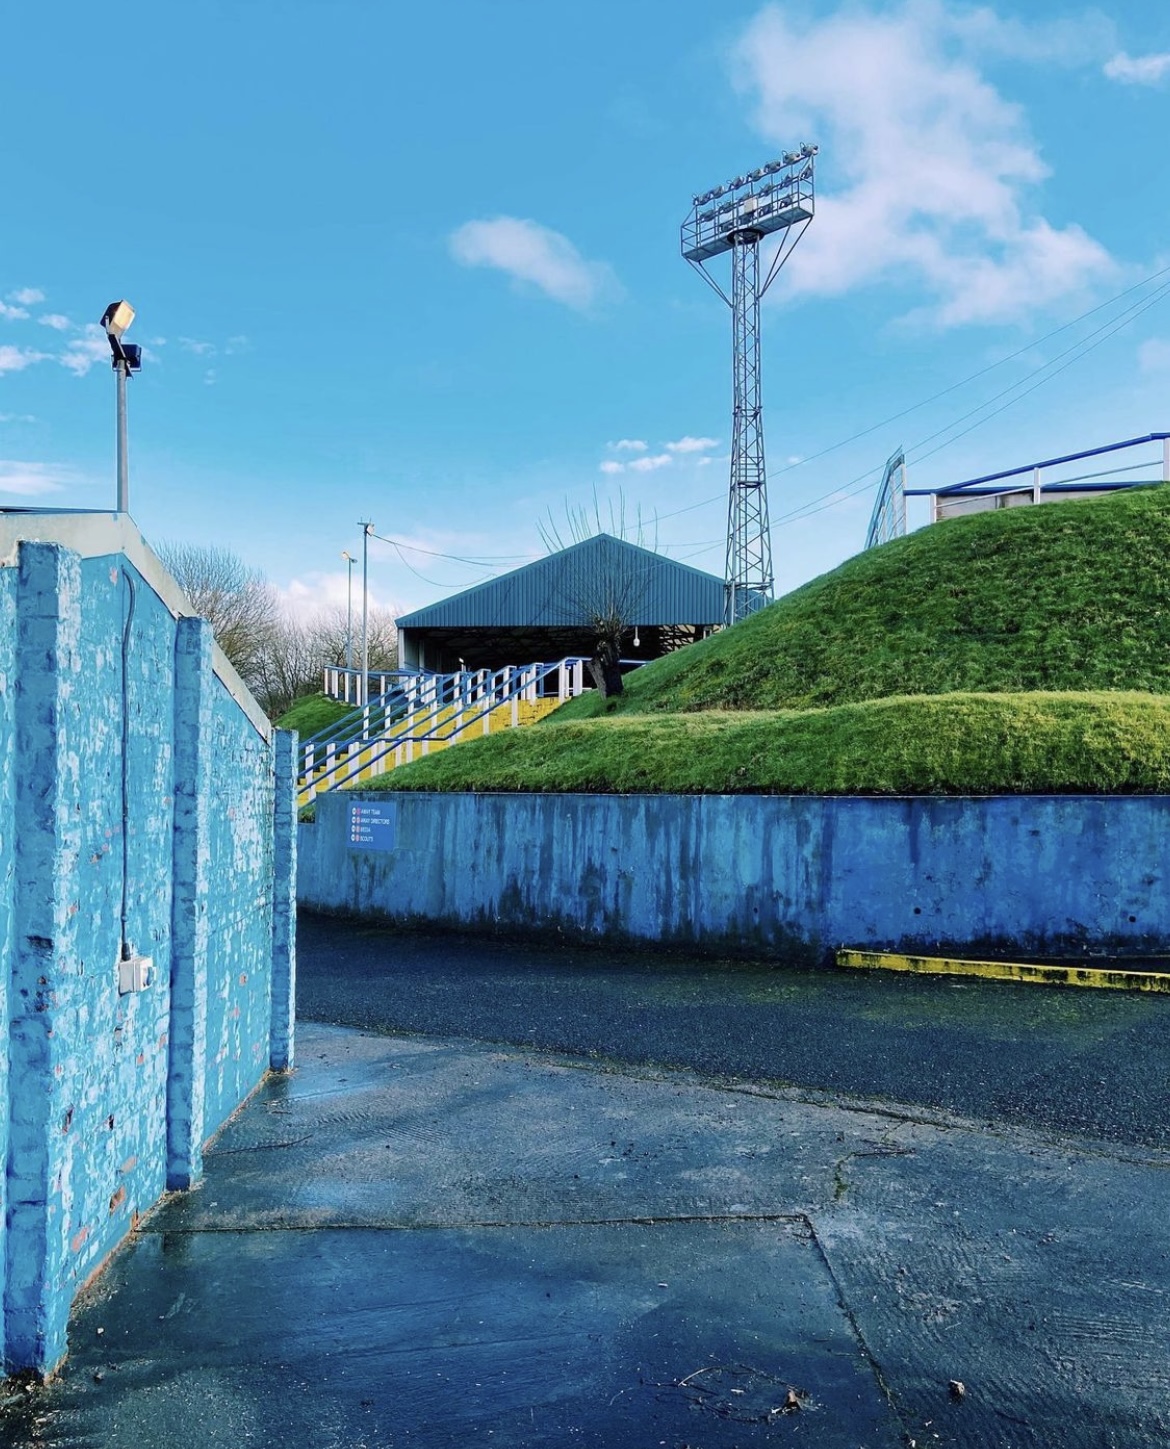 Атмосфера за пределами топ-лиг–кайф! Один из старейших стадионов Шотландии и поле на высоте 2000 метров